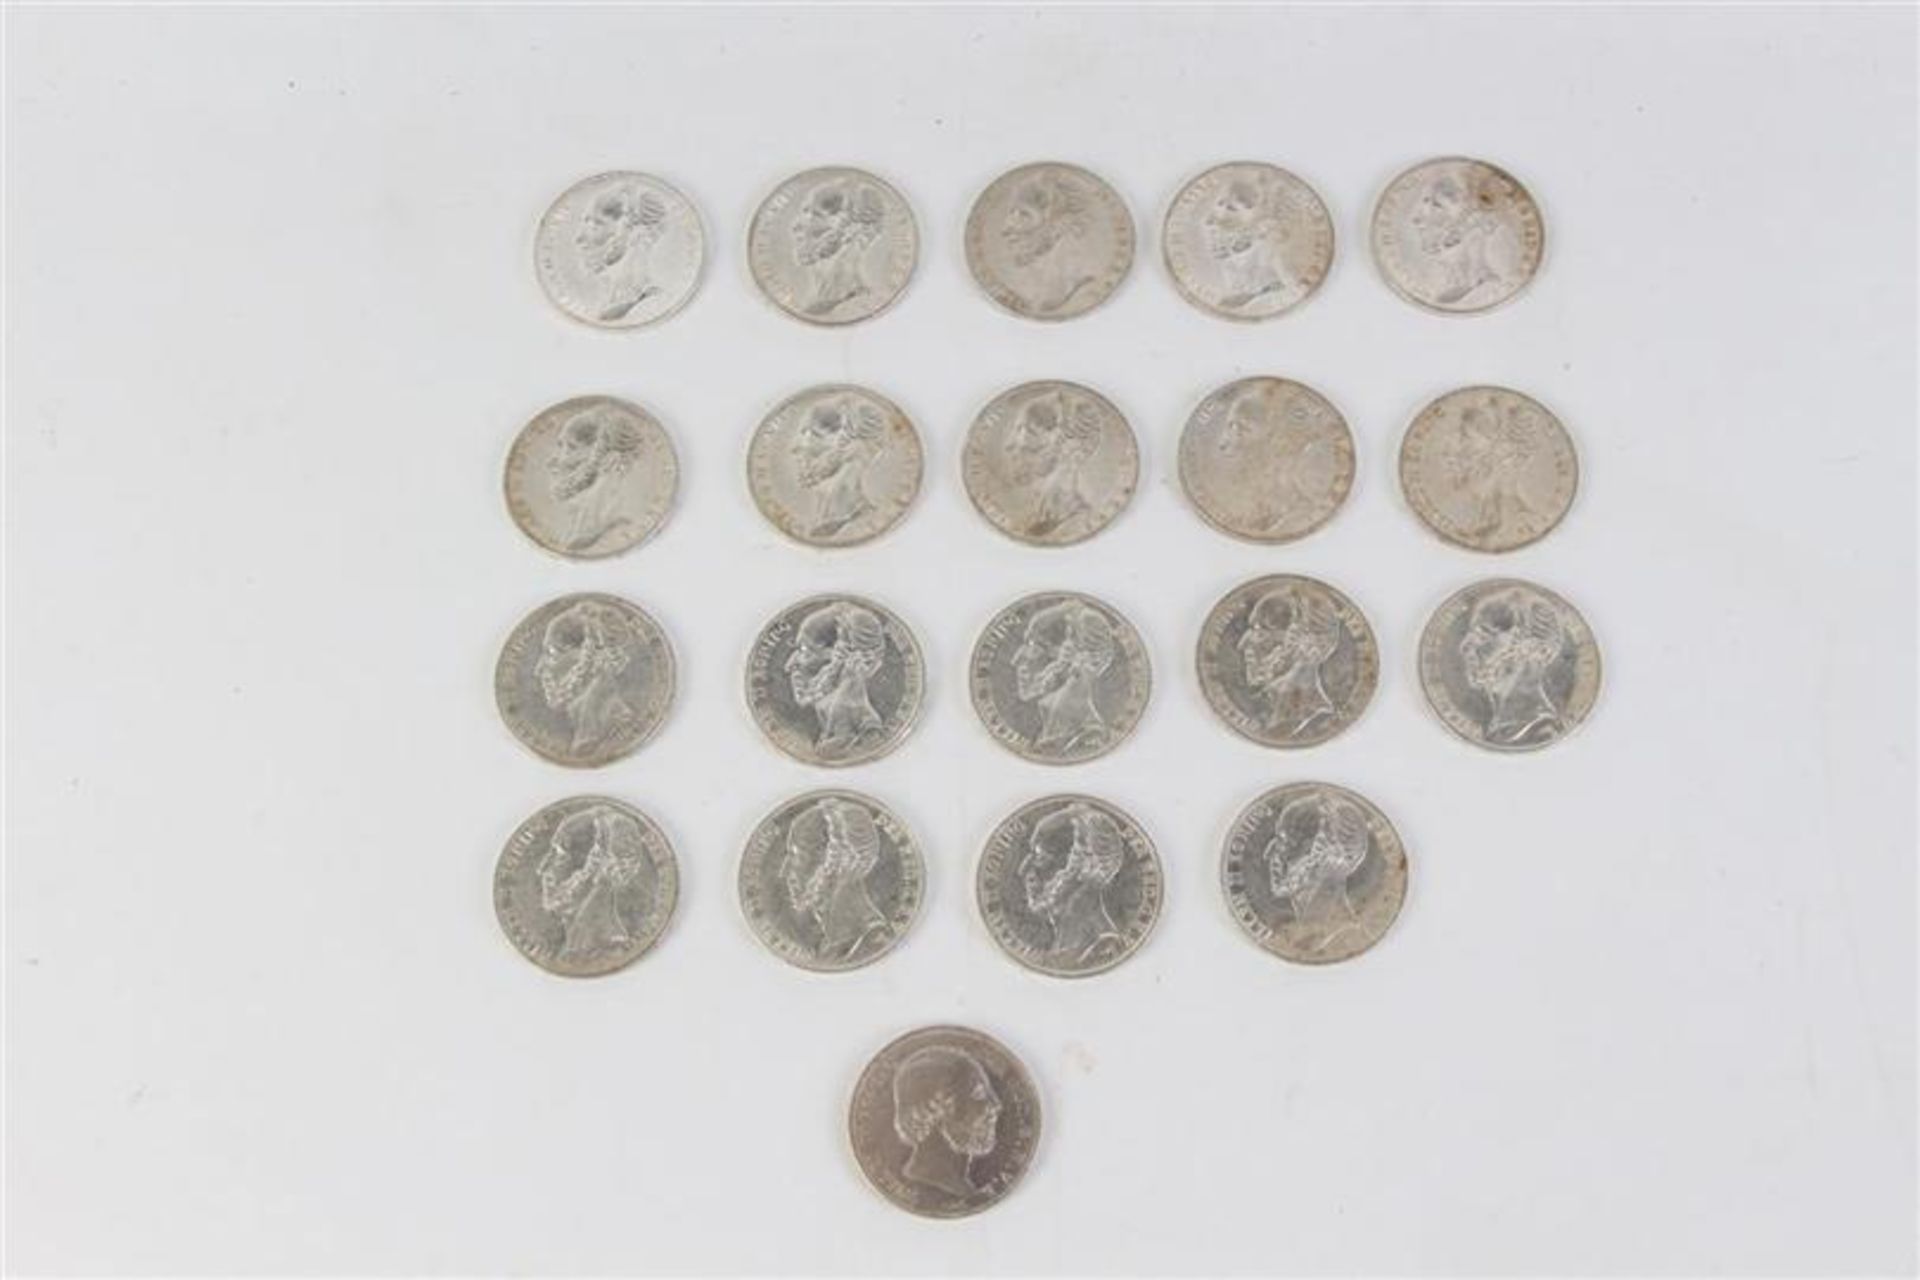 Zilveren guldens Willem II: 4 stuks uit 1843 en 15 stuks uit 1848. Toegevoegd een Willem III